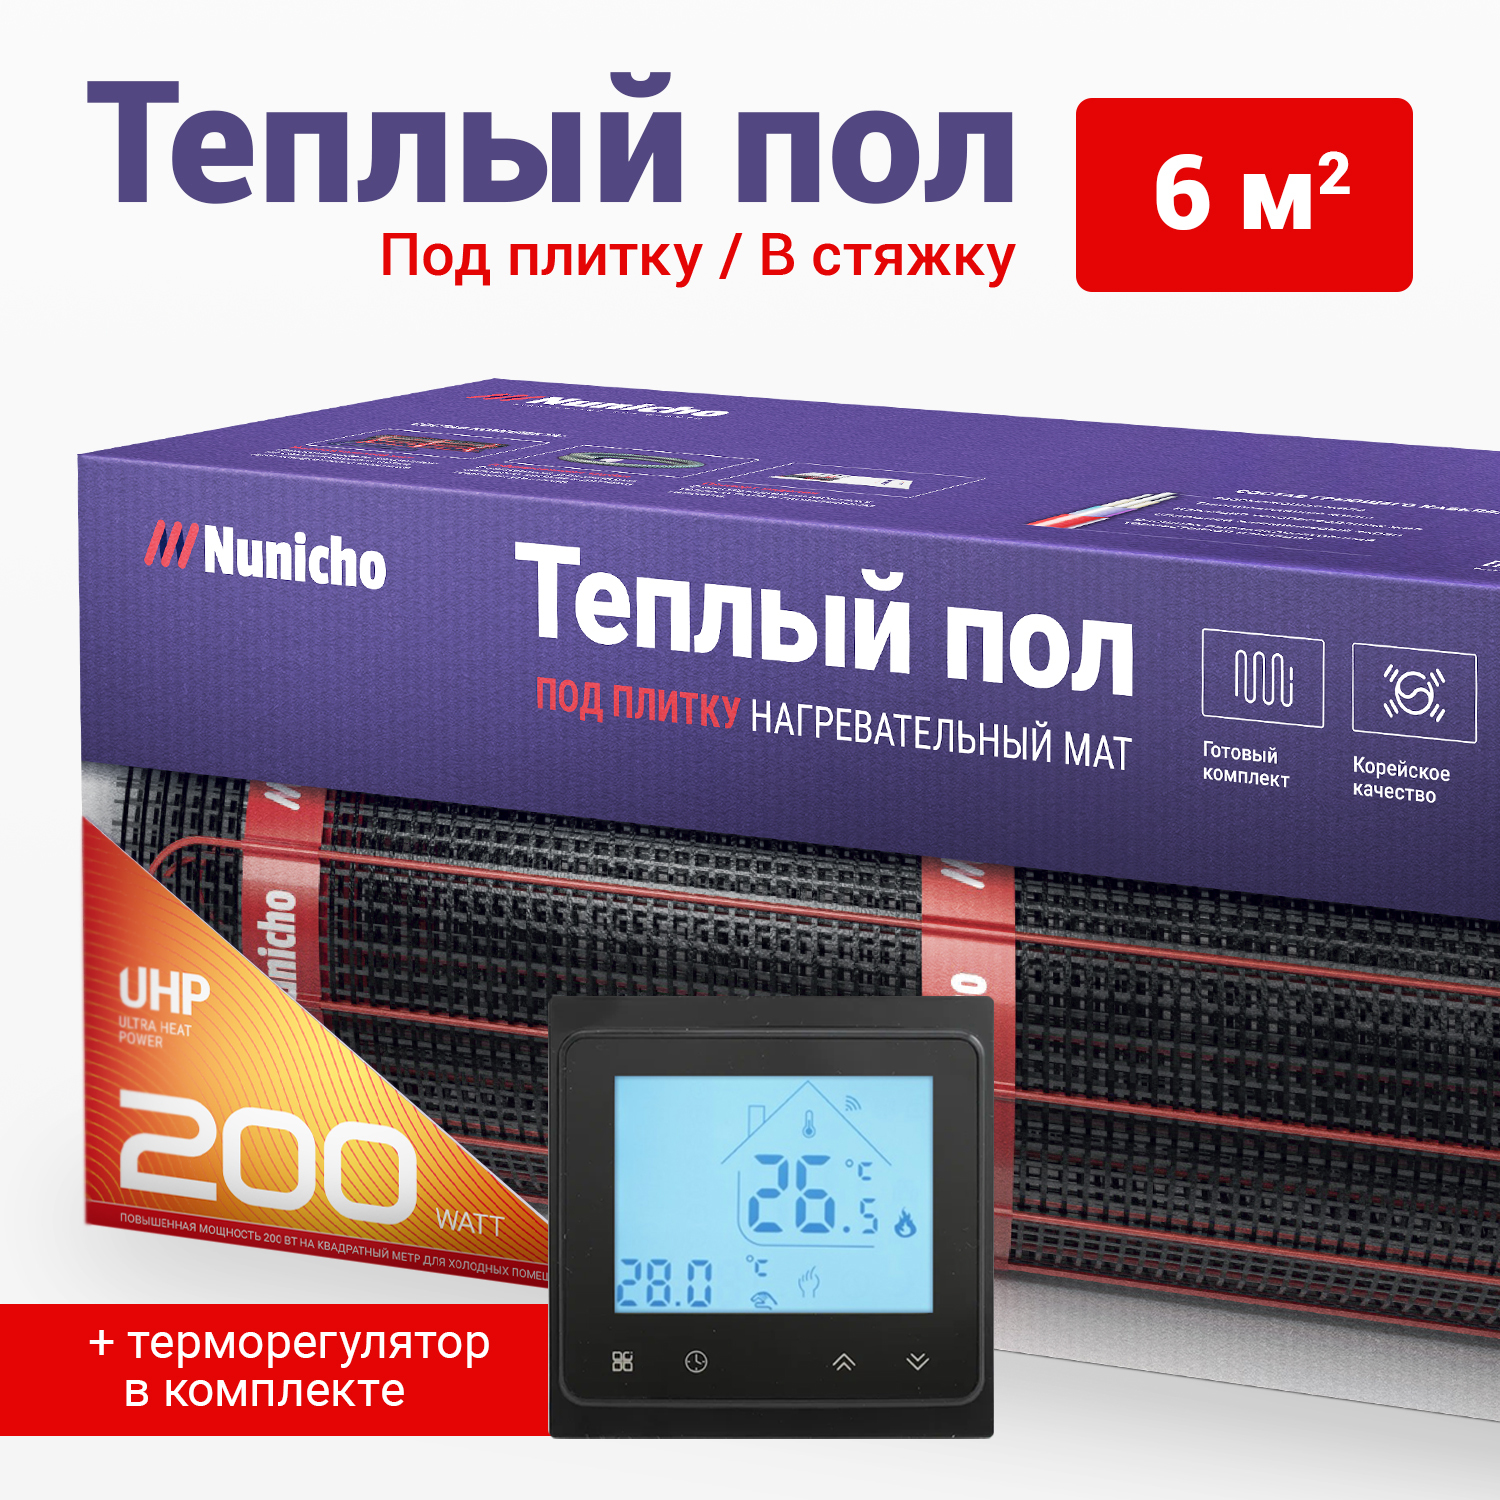 фото Теплый пол под плитку в стяжку nunicho 6 м2, 200 вт/м2 со smart-терморегулятором черным